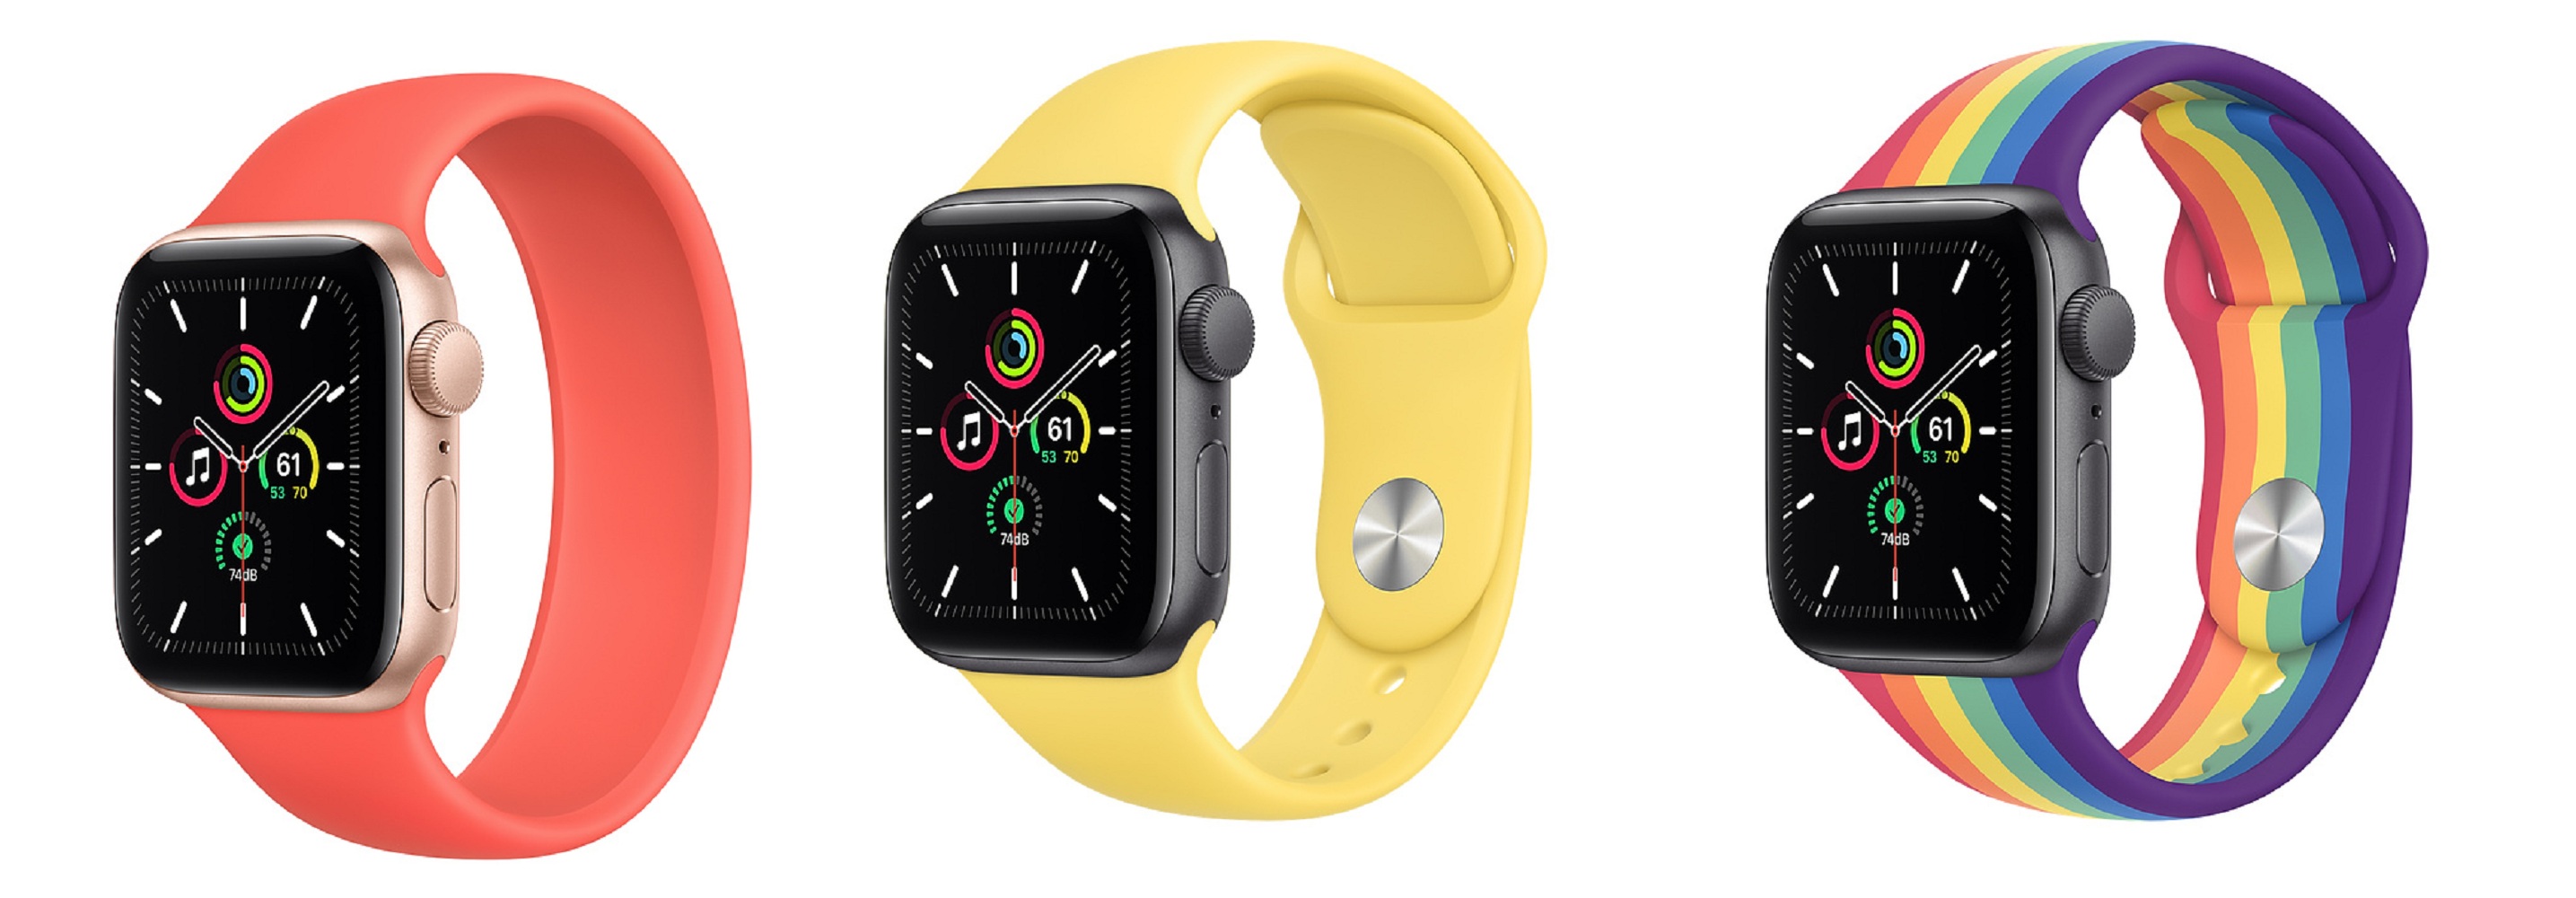 Apple Watch SE - Lihat Harga dan Spesifikasi